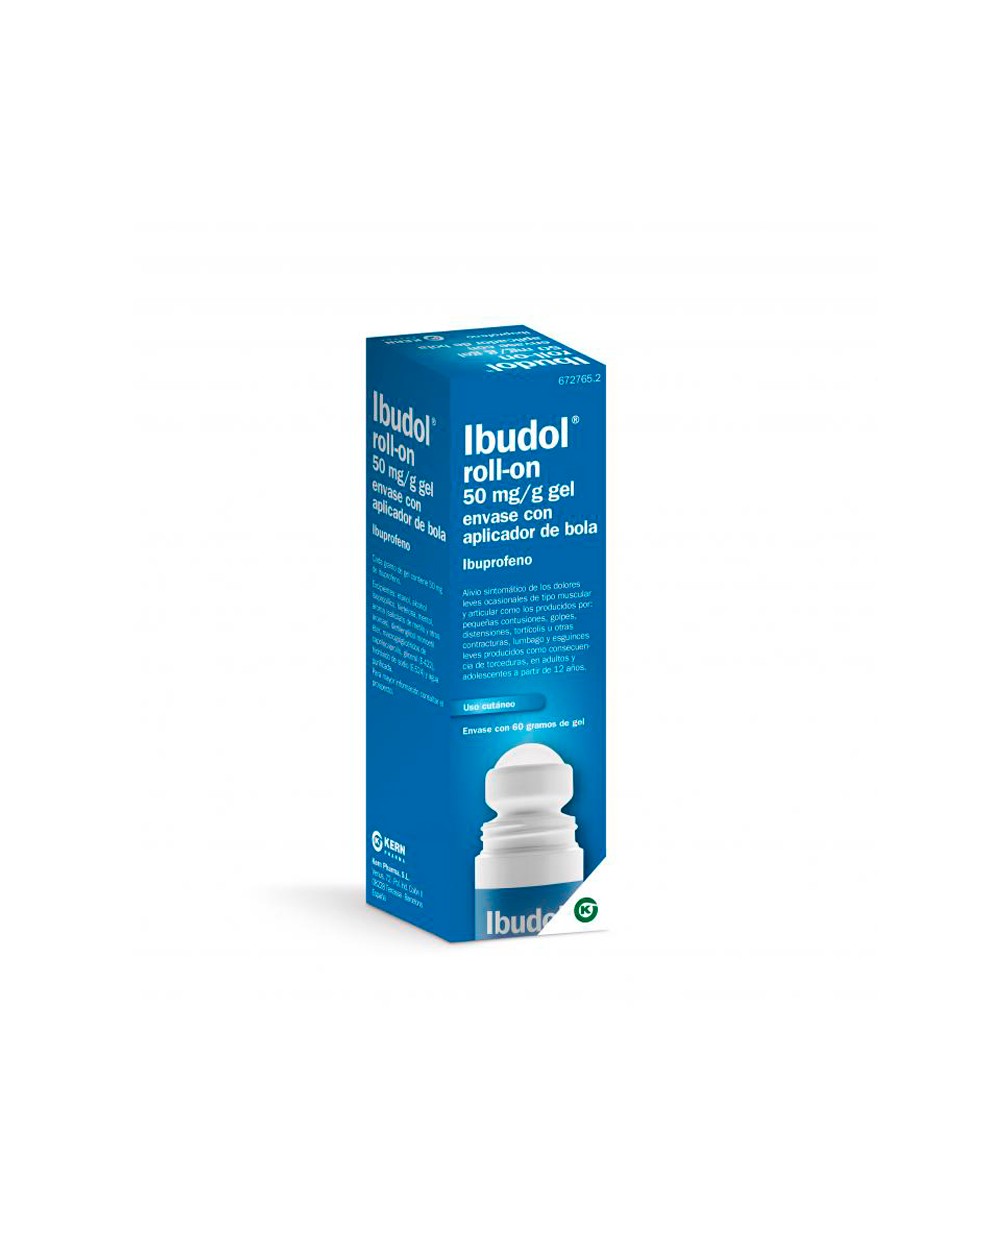 Antiinflamatorio Ibudol roll-on 50mg/g gel 60gr